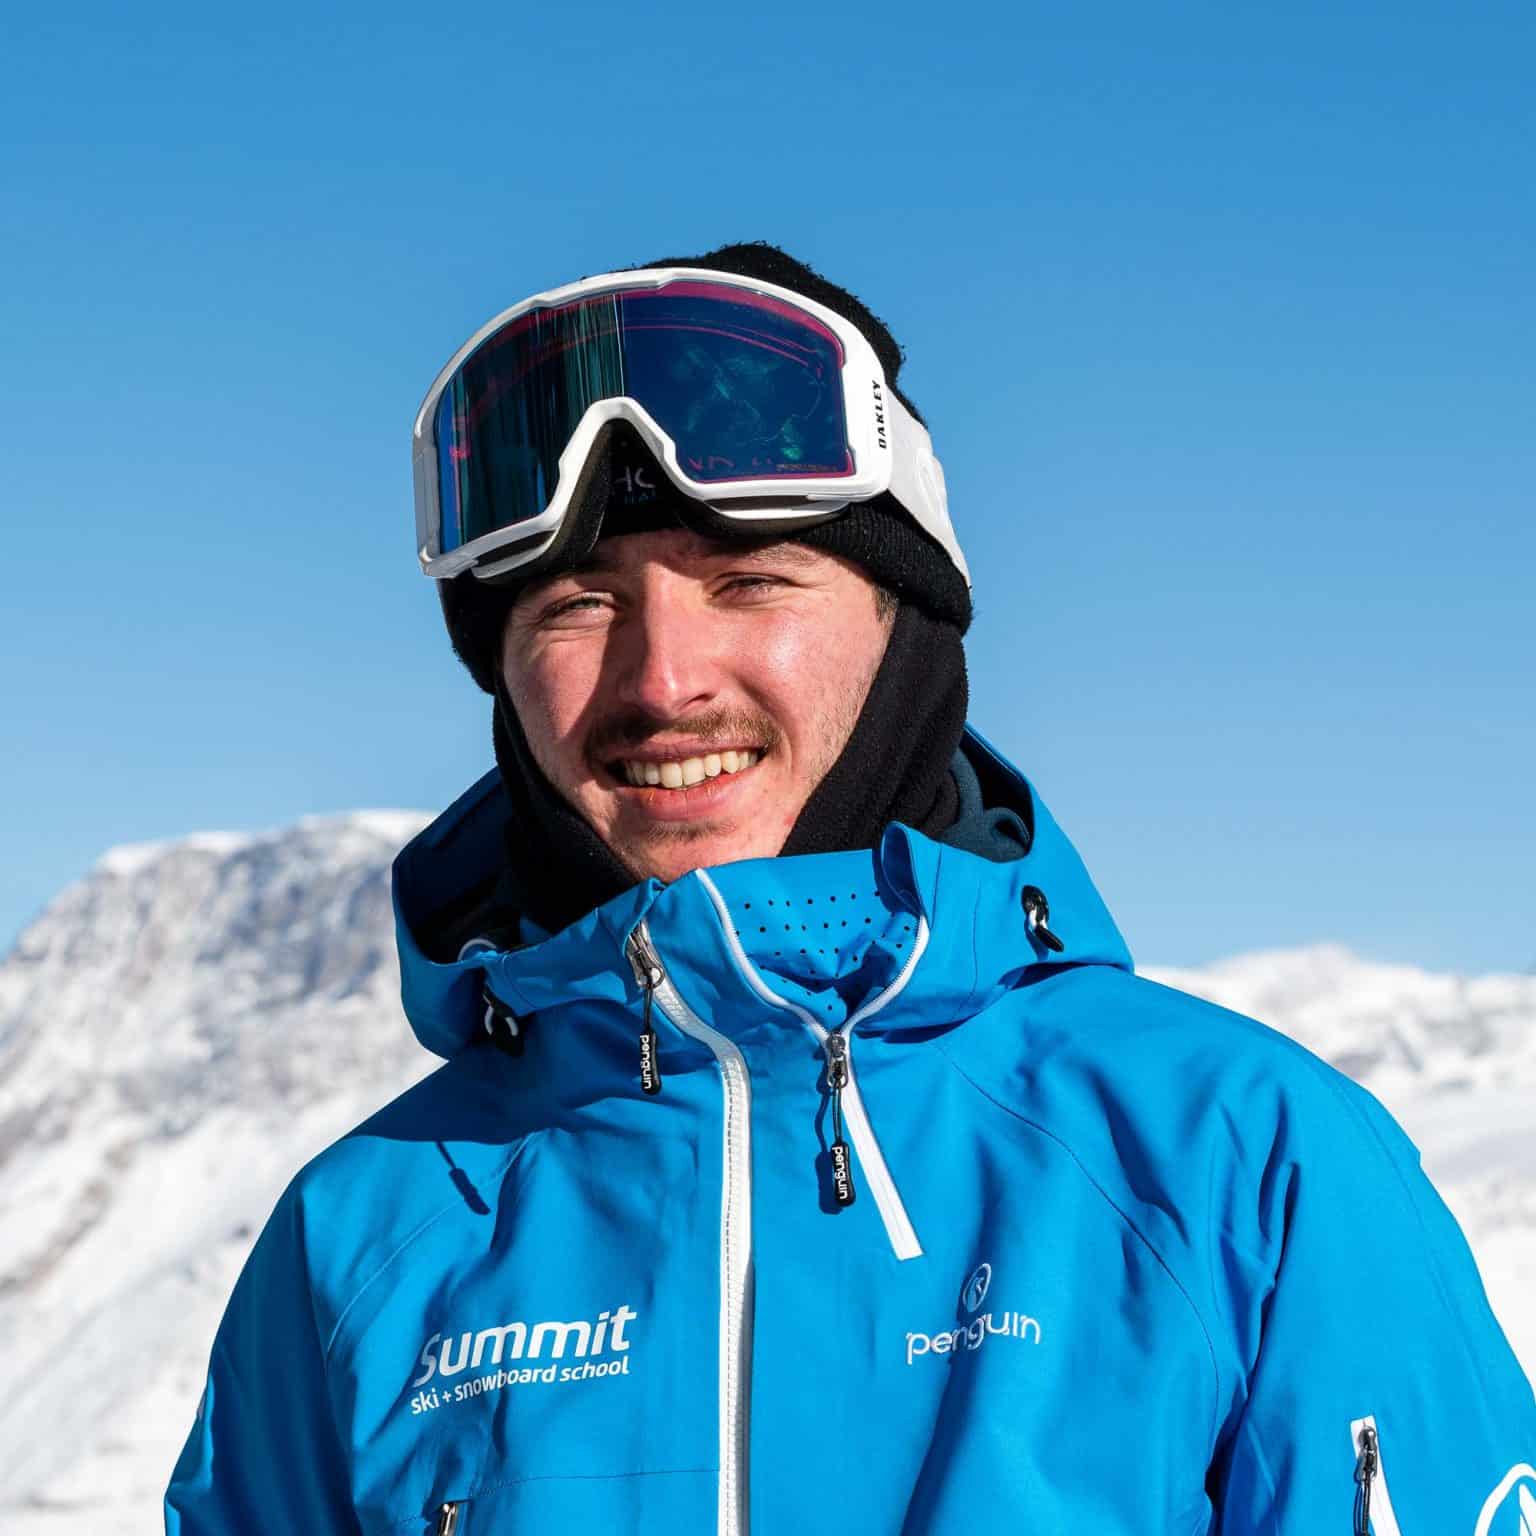 Staff - Summit Ski & Snowboard School